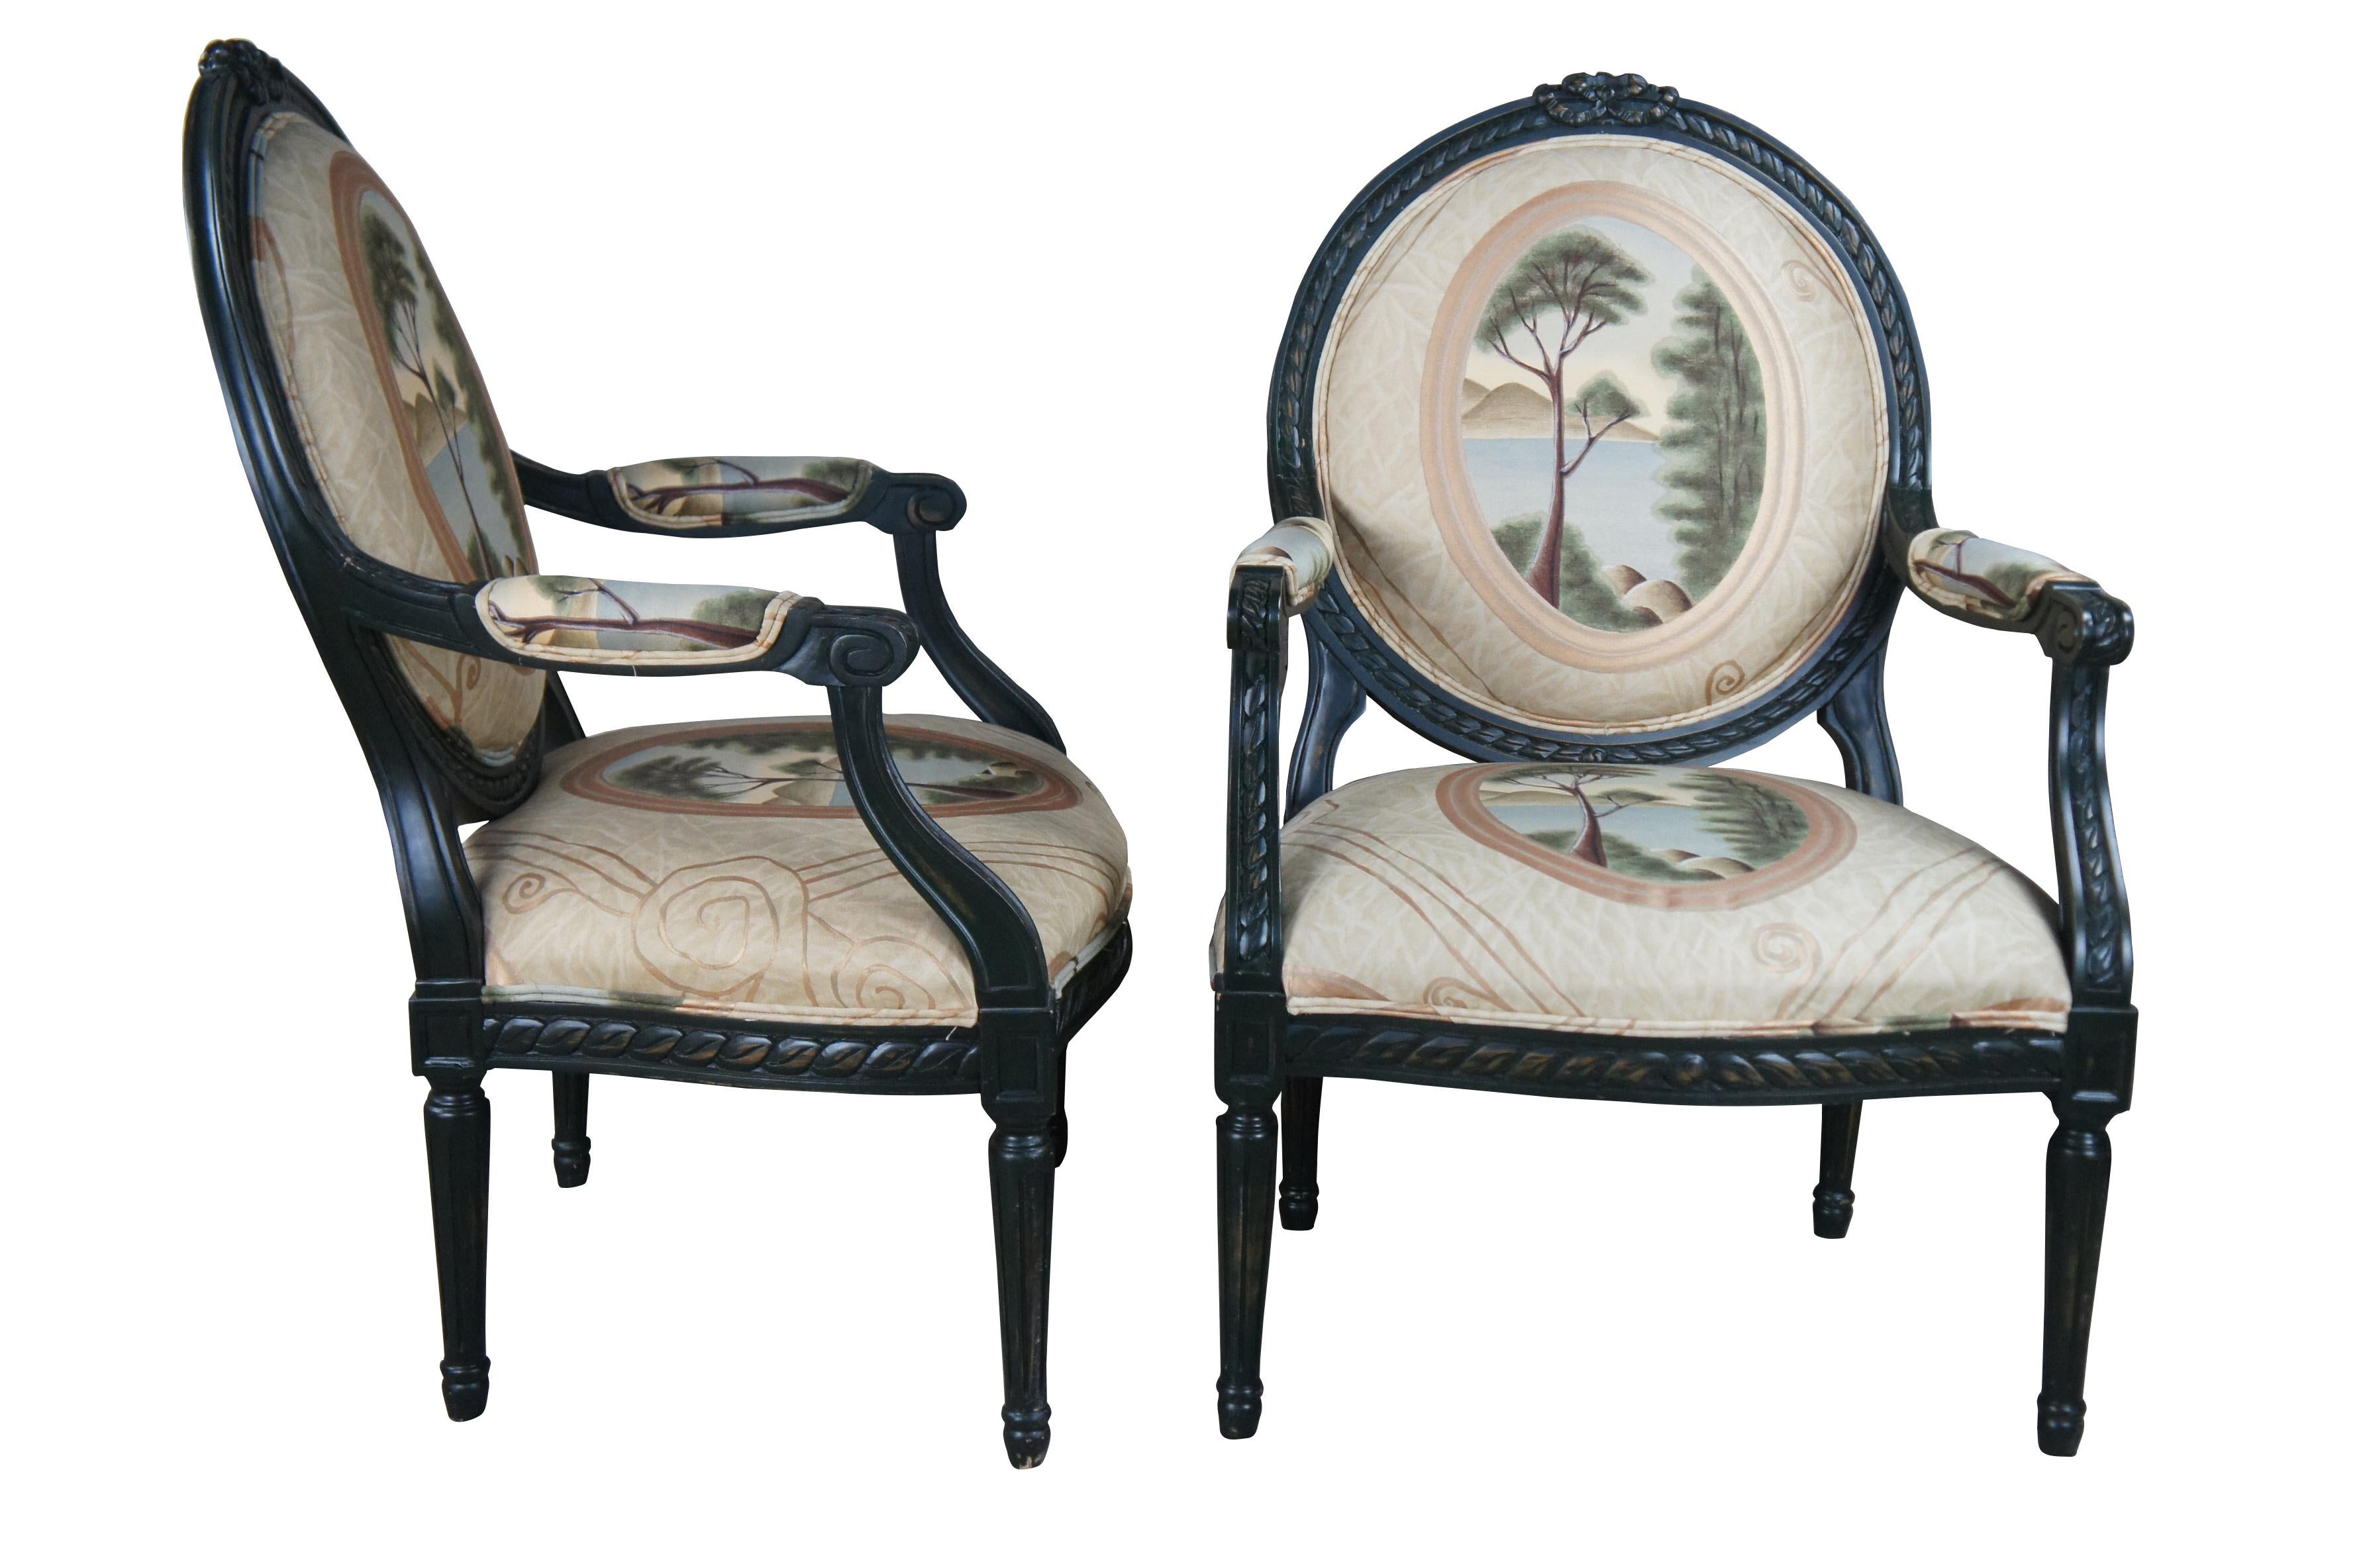 Deux fauteuils vintage Drexel Heritage de style Louis XVI / néoclassique français, avec une structure ébonisée et un dossier en ruban, un revêtement en camaïeu de paysages marins et des pieds fuselés cannelés.  H1350, 8257.

Dimensions :
27,5